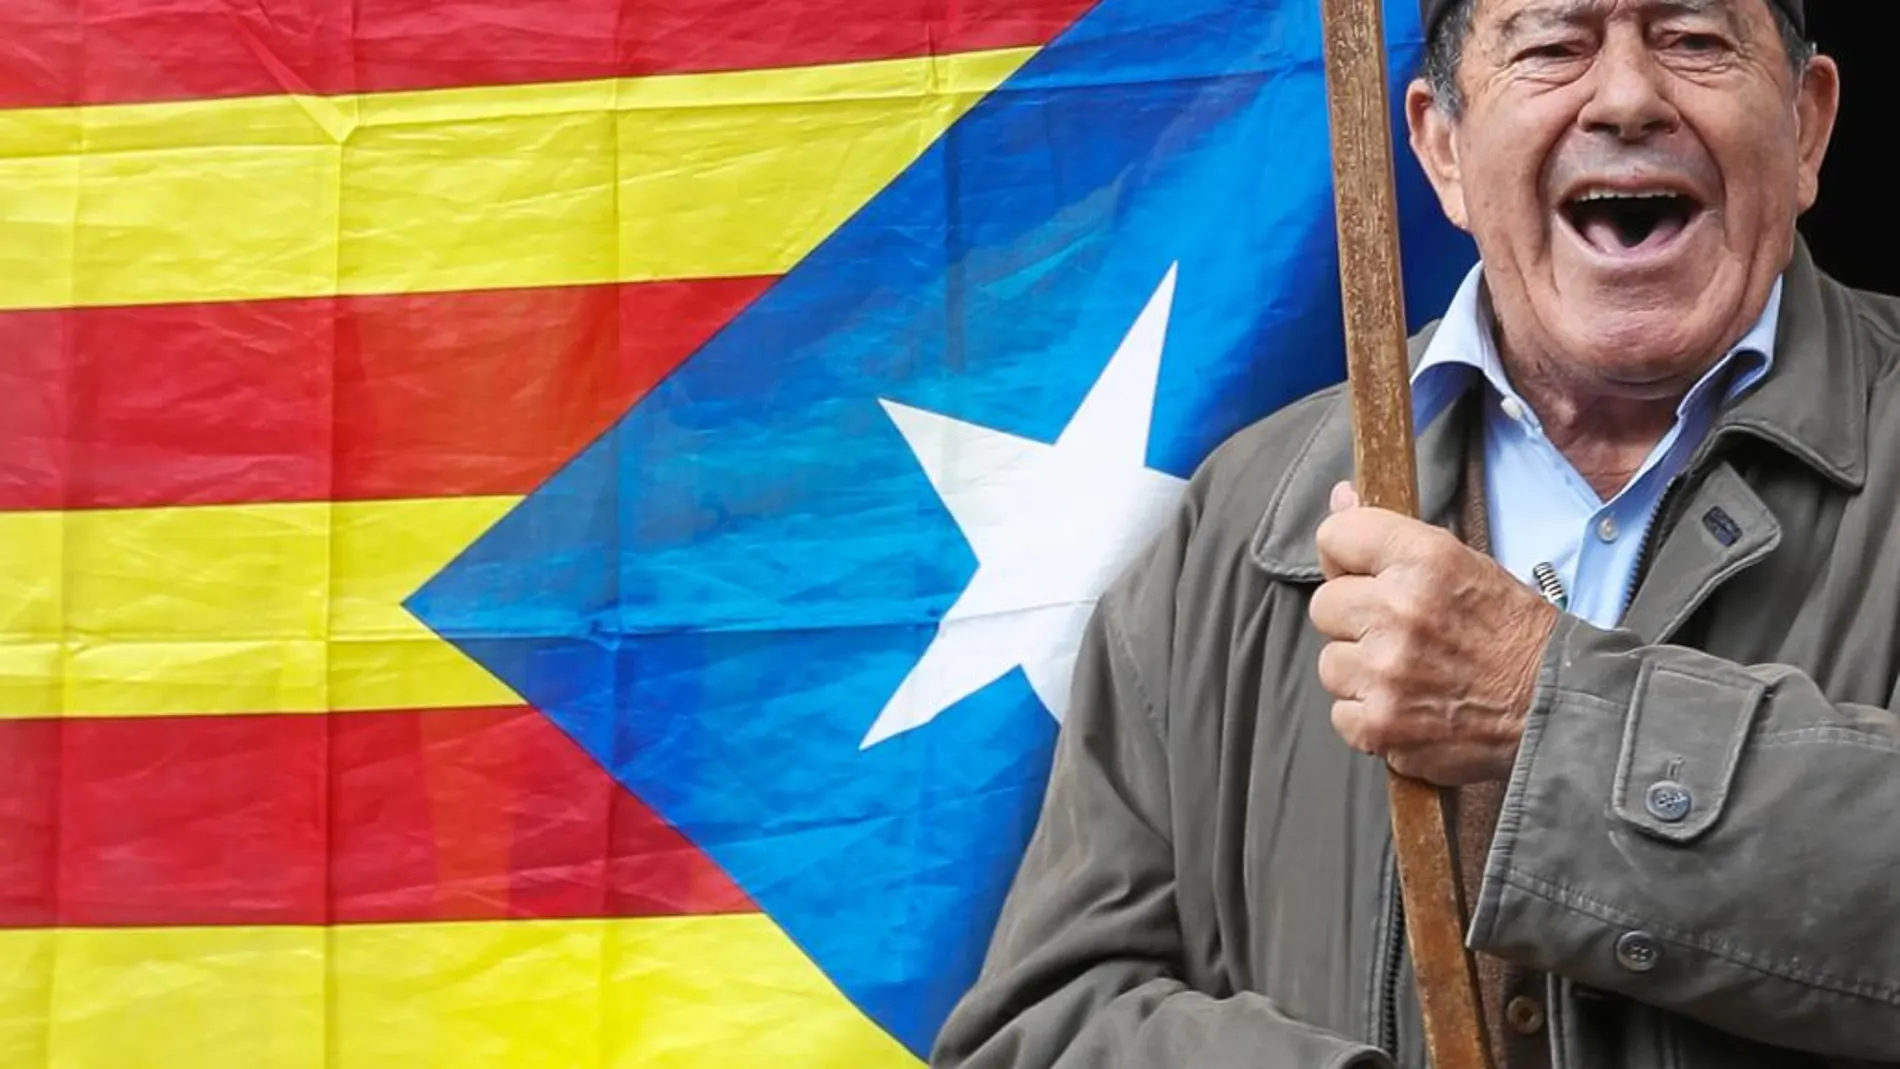 Un hombre enarbola una bandera «estelada» y usa una barretina, tocado considerado como un símbolo catalanista